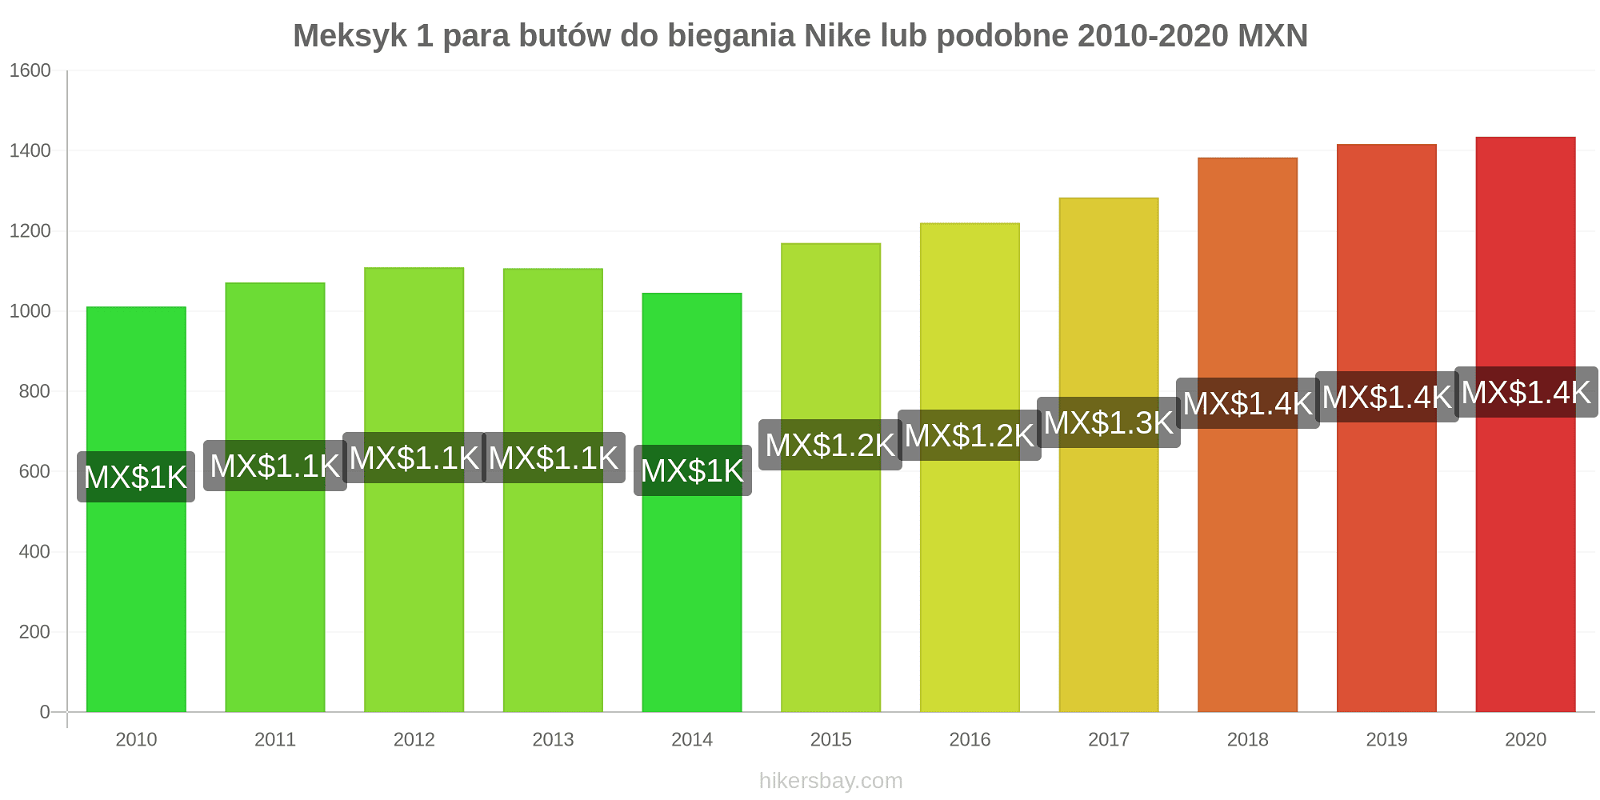 Meksyk zmiany cen 1 para butów do biegania Nike lub podobne hikersbay.com